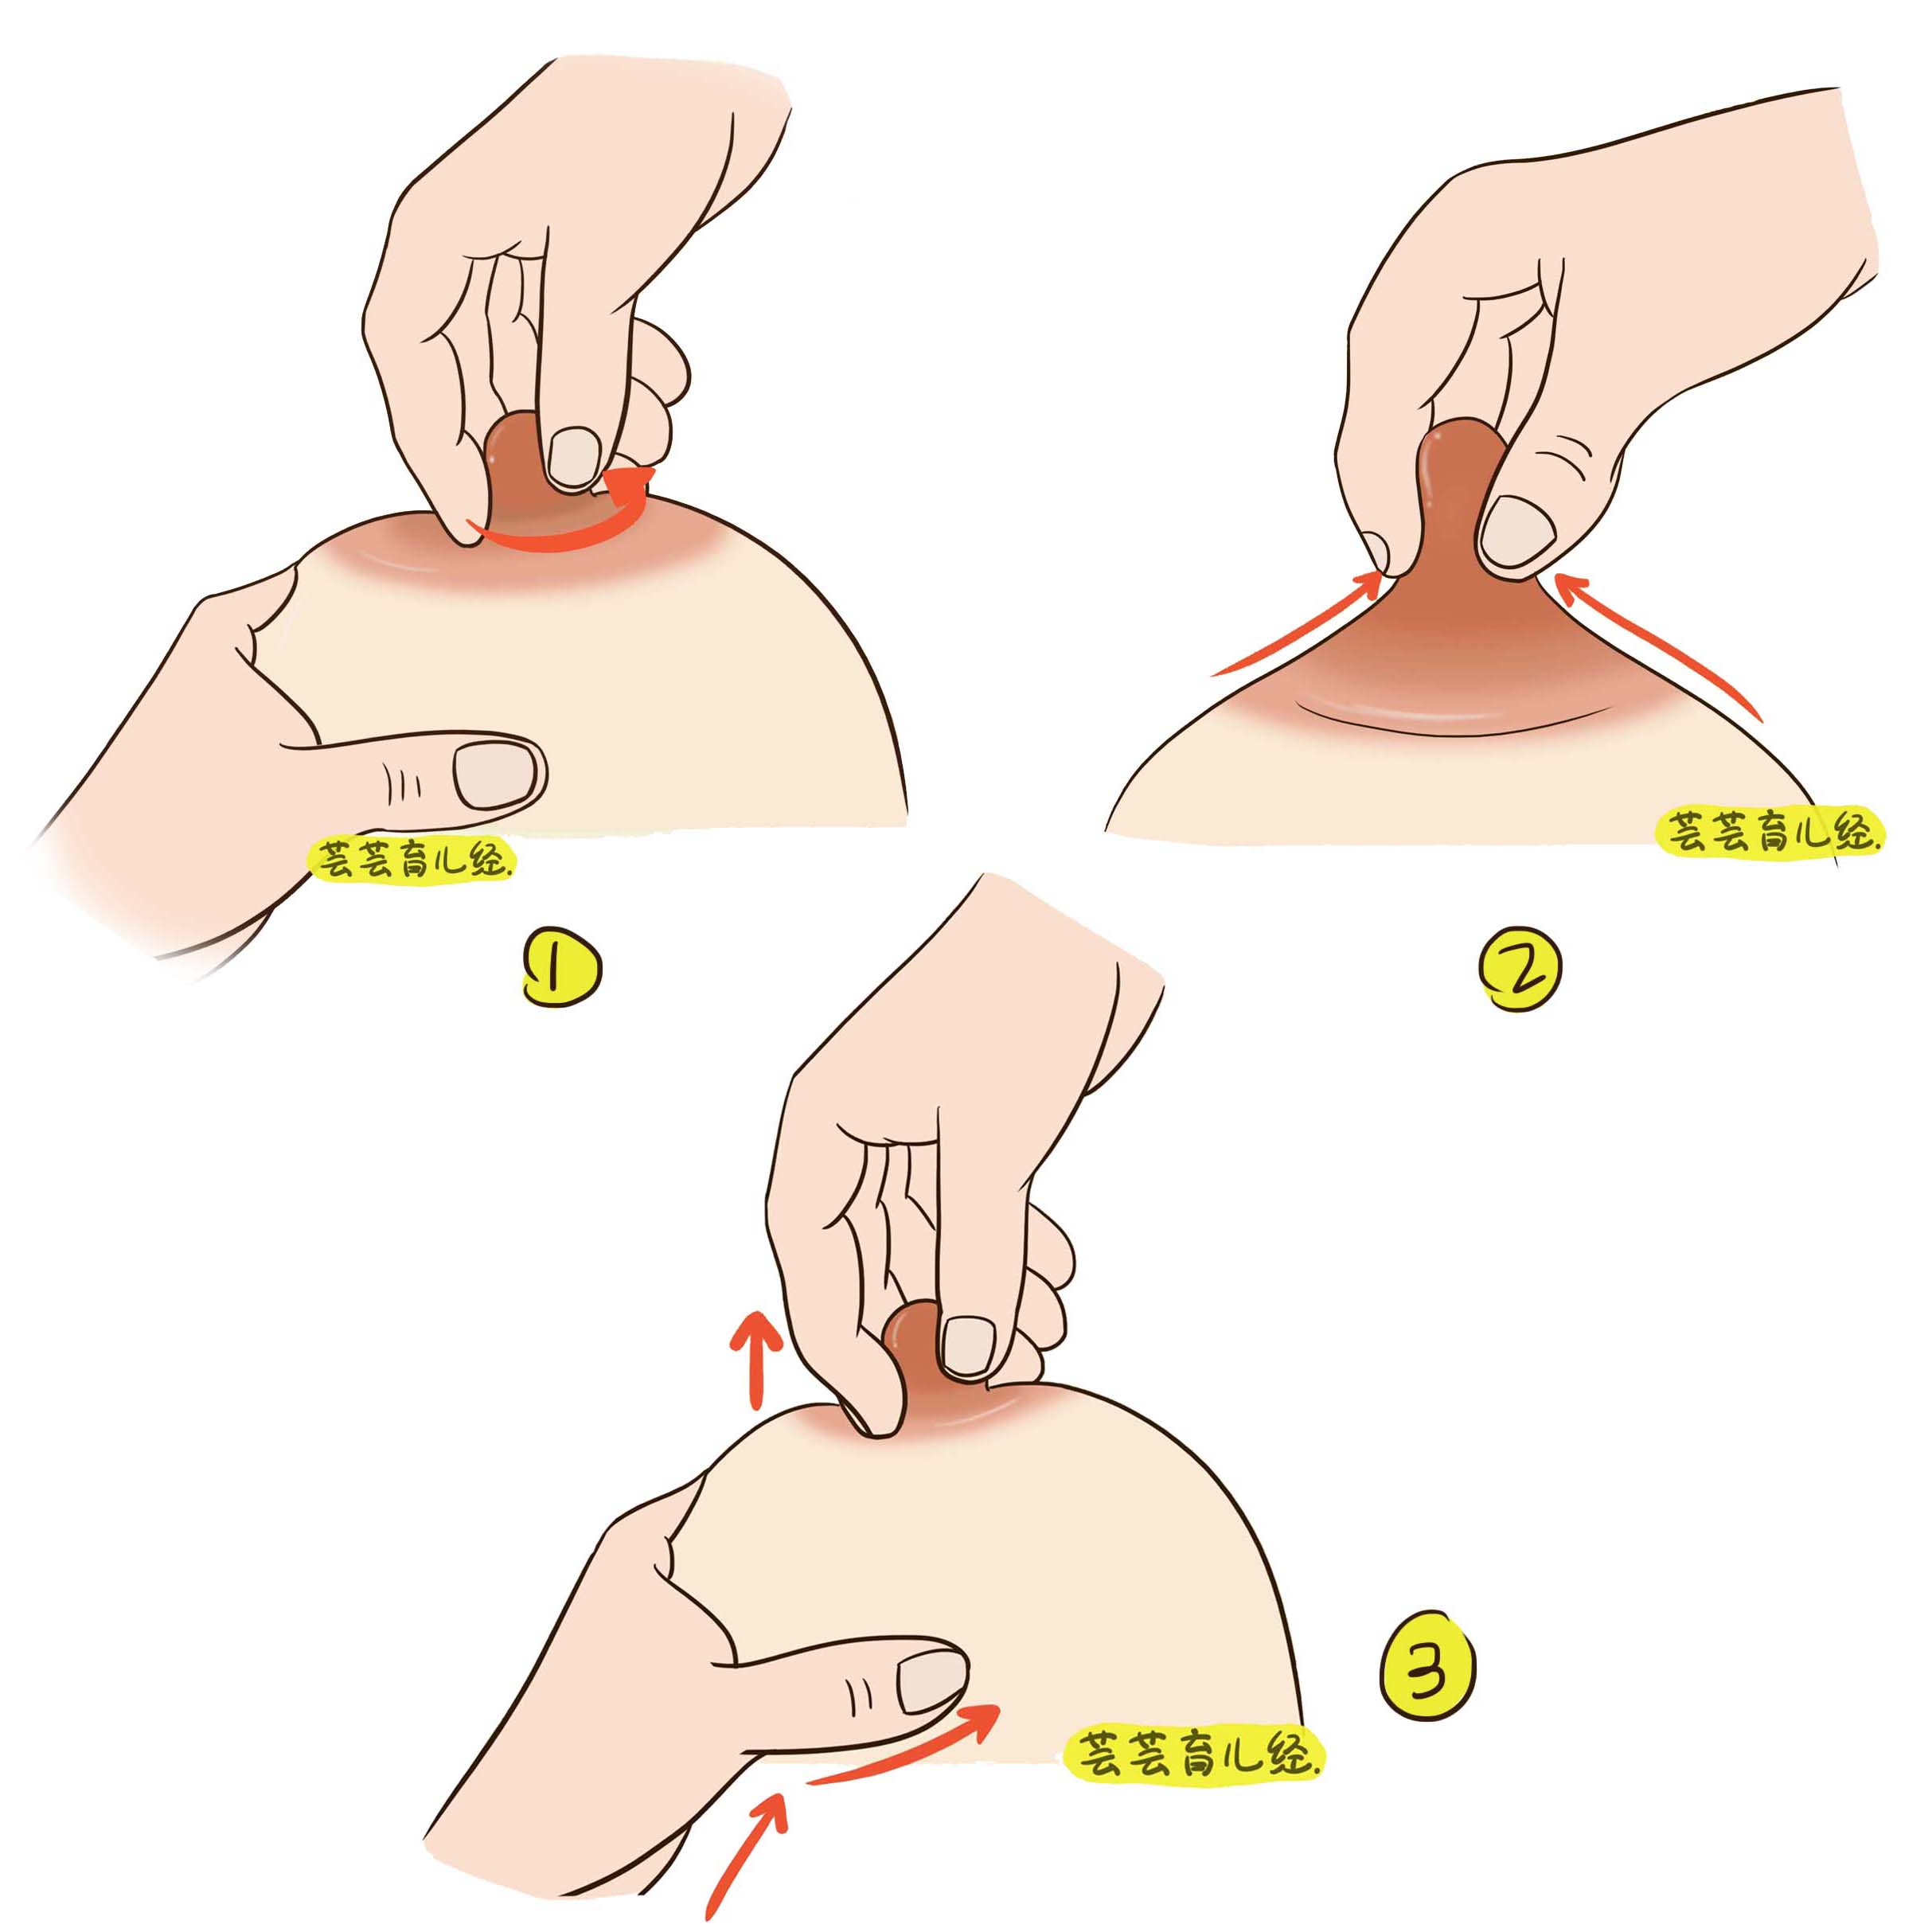 (2)催乳按摩法:乳头催乳按摩法:妈妈一只手托住乳房,另一只手的拇指